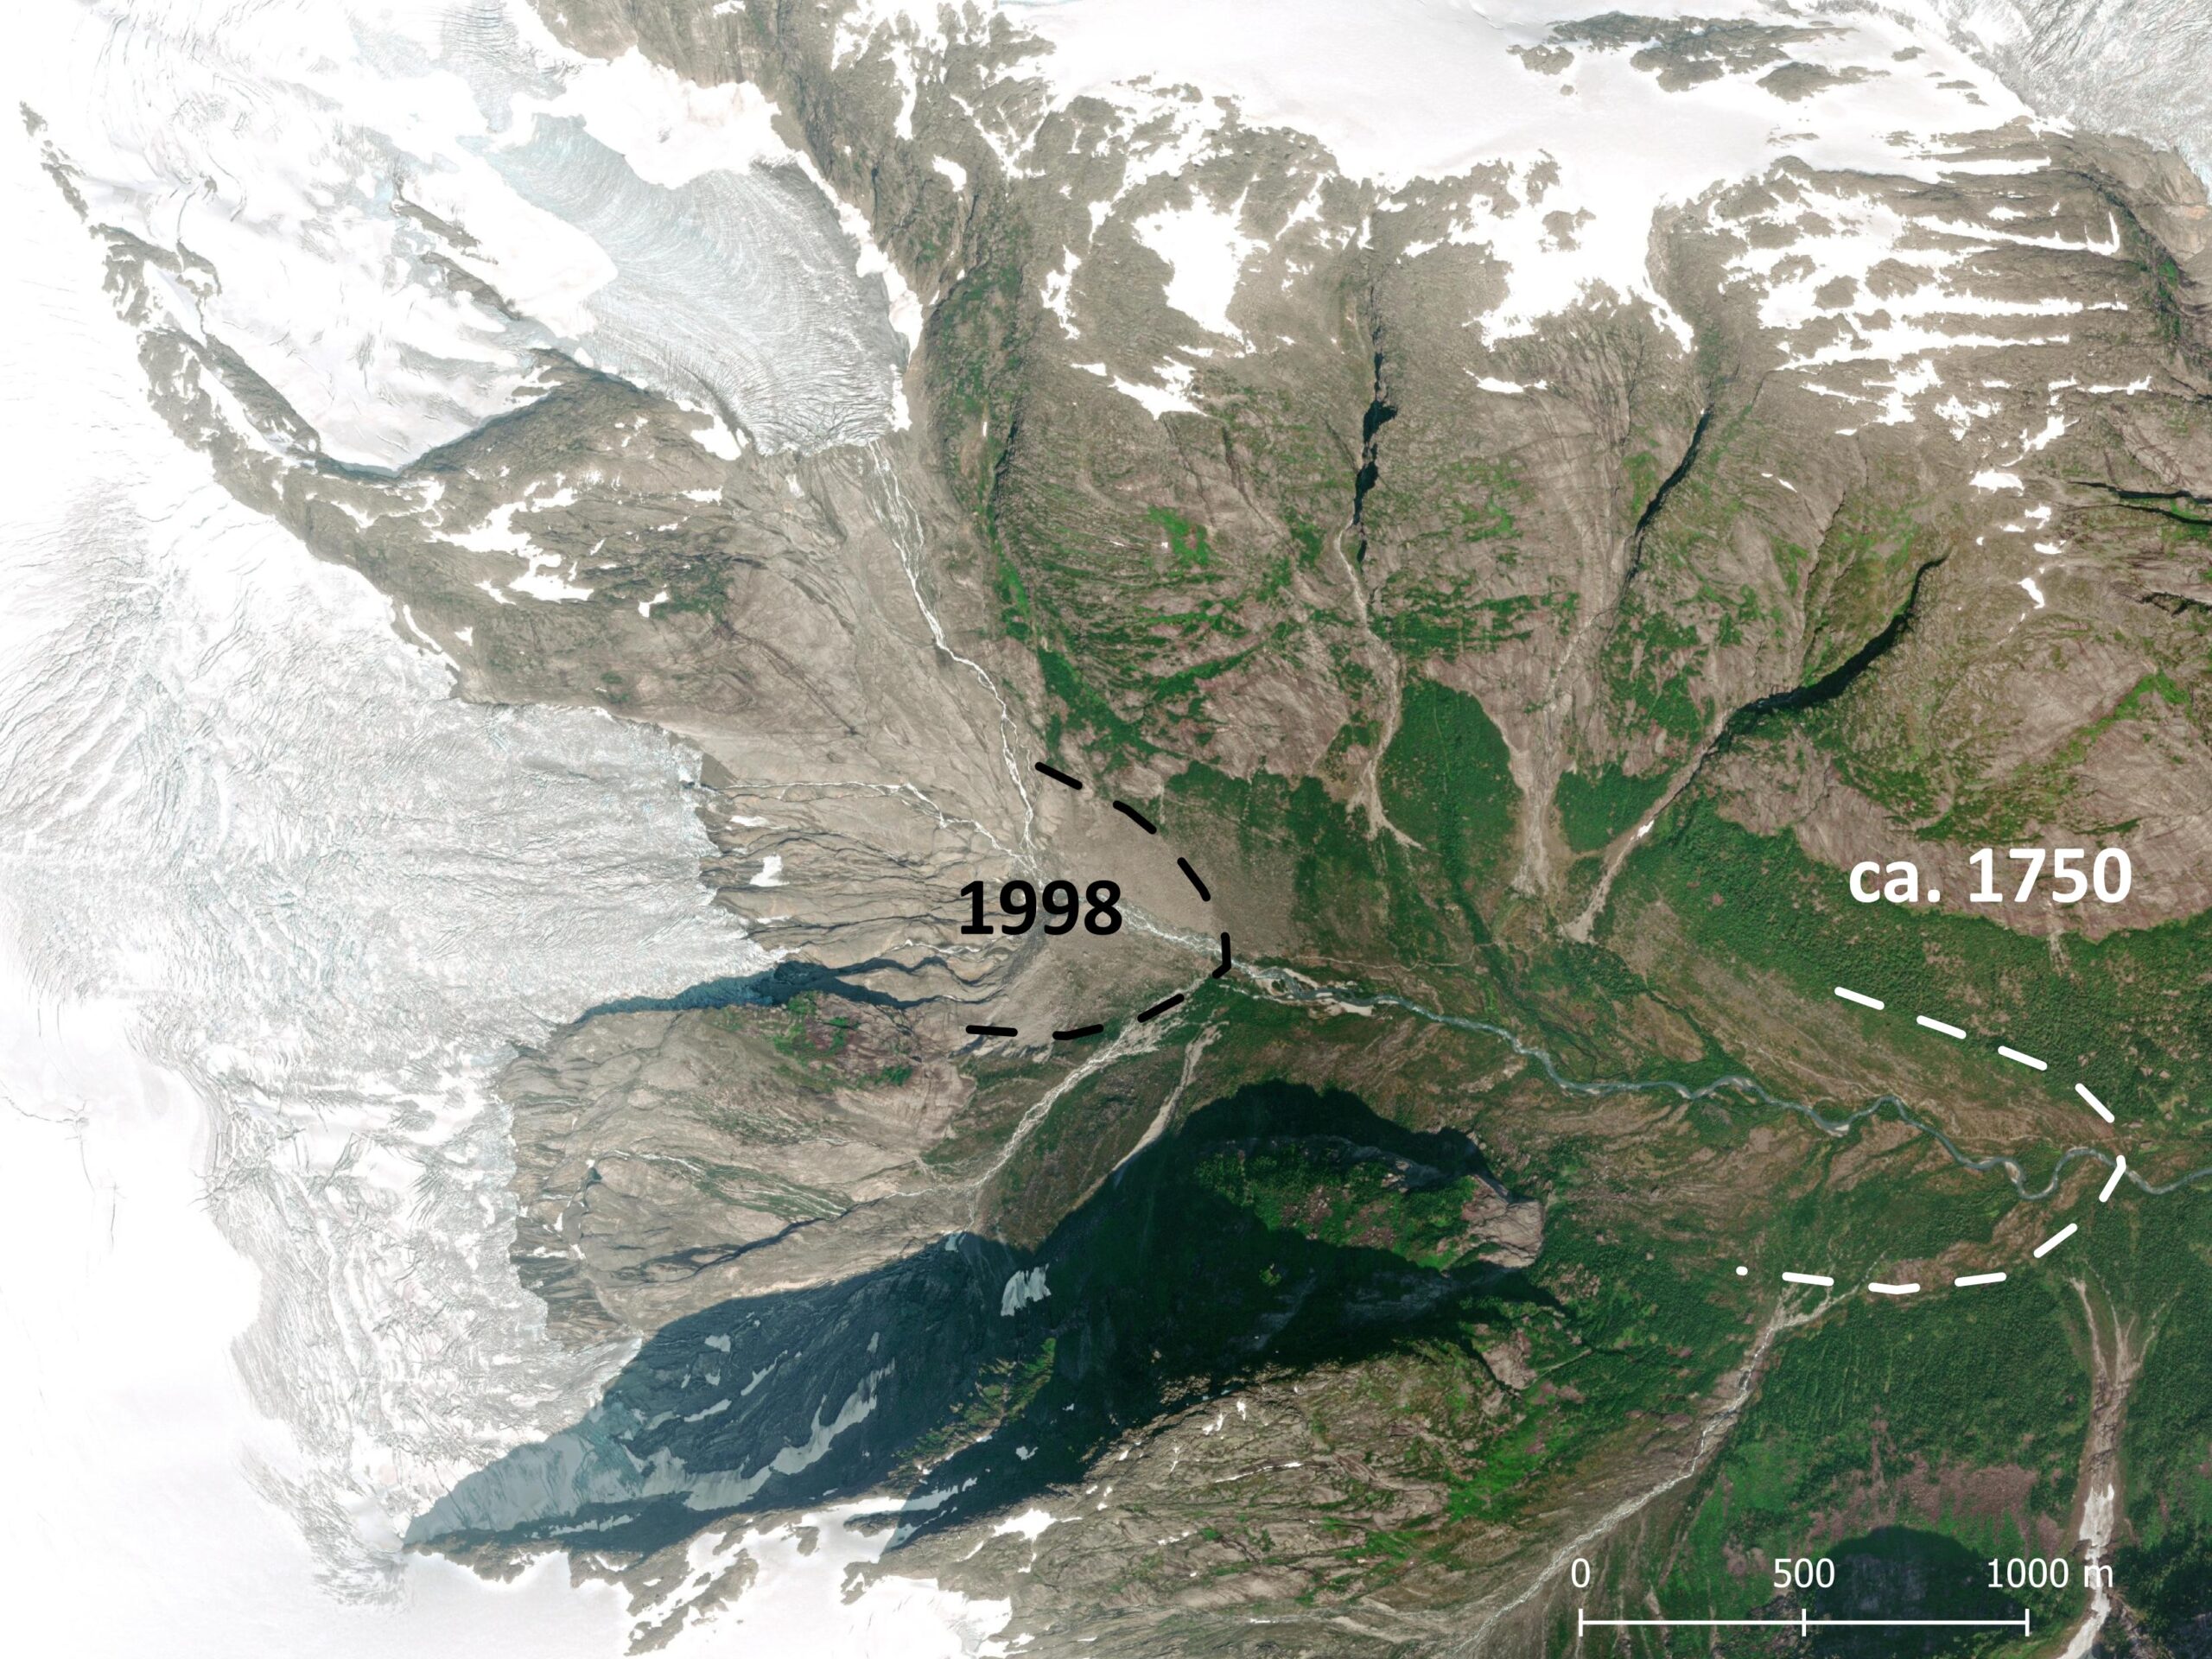 Satellietbeeld van het Krundalen in 2021 met de omvang van de Bergsetbreen in 1999 en omstreeks 1750.